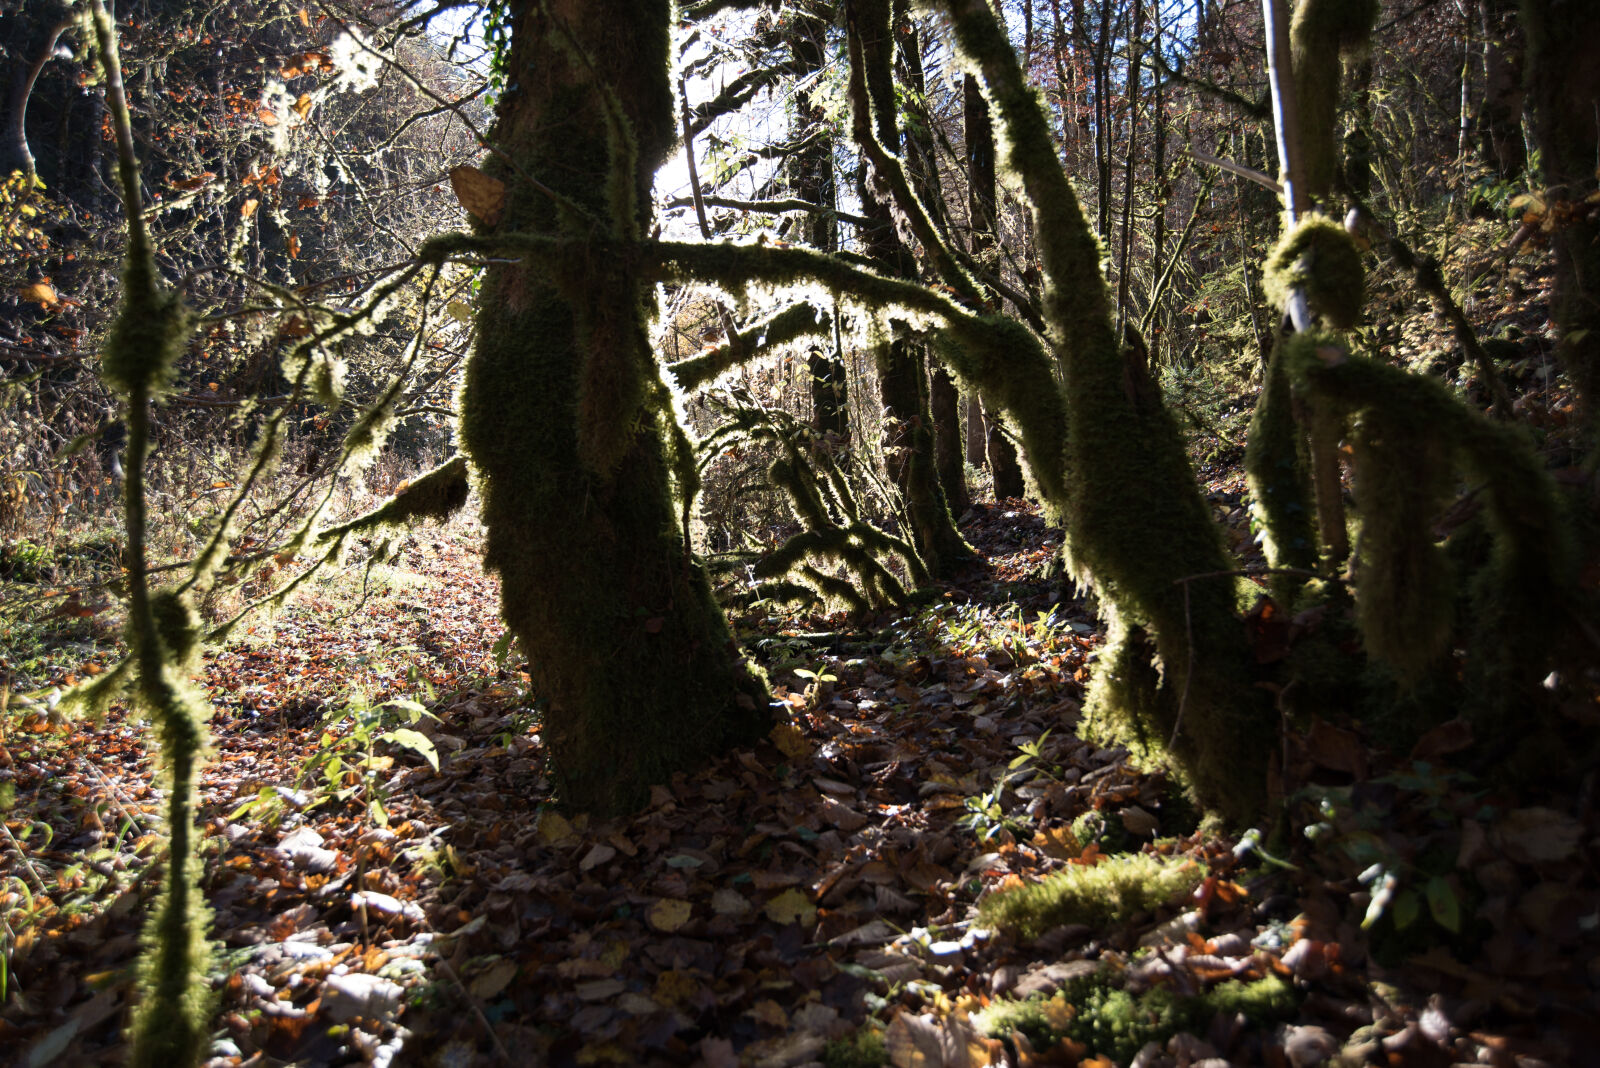 Nikon AF Nikkor 18-35mm F3.5-4.5D IF ED sample photo. Forest, light, sun, tree photography